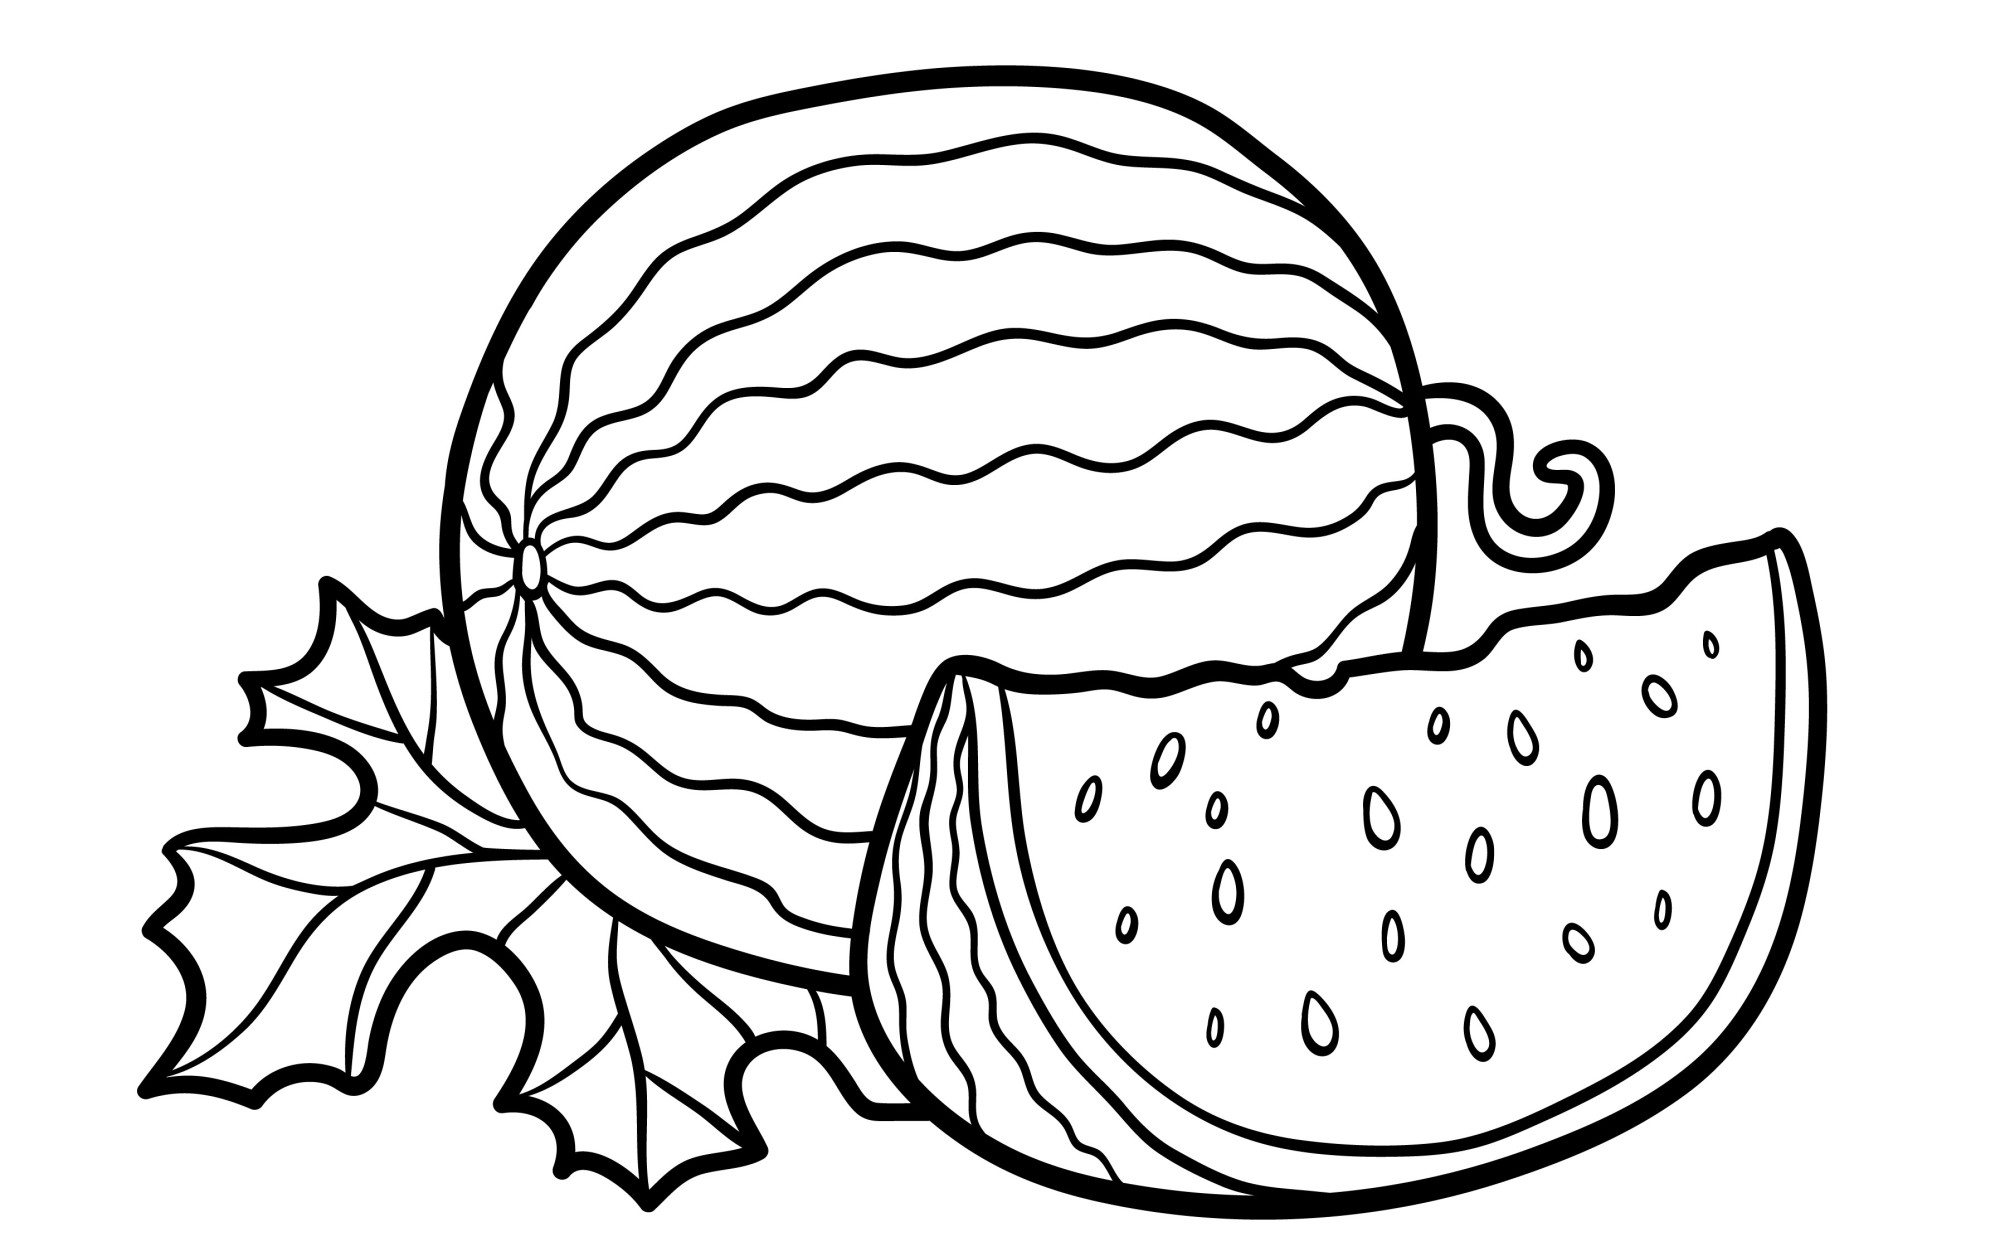 Раскраска для детей: спелый арбуз и сочная долька